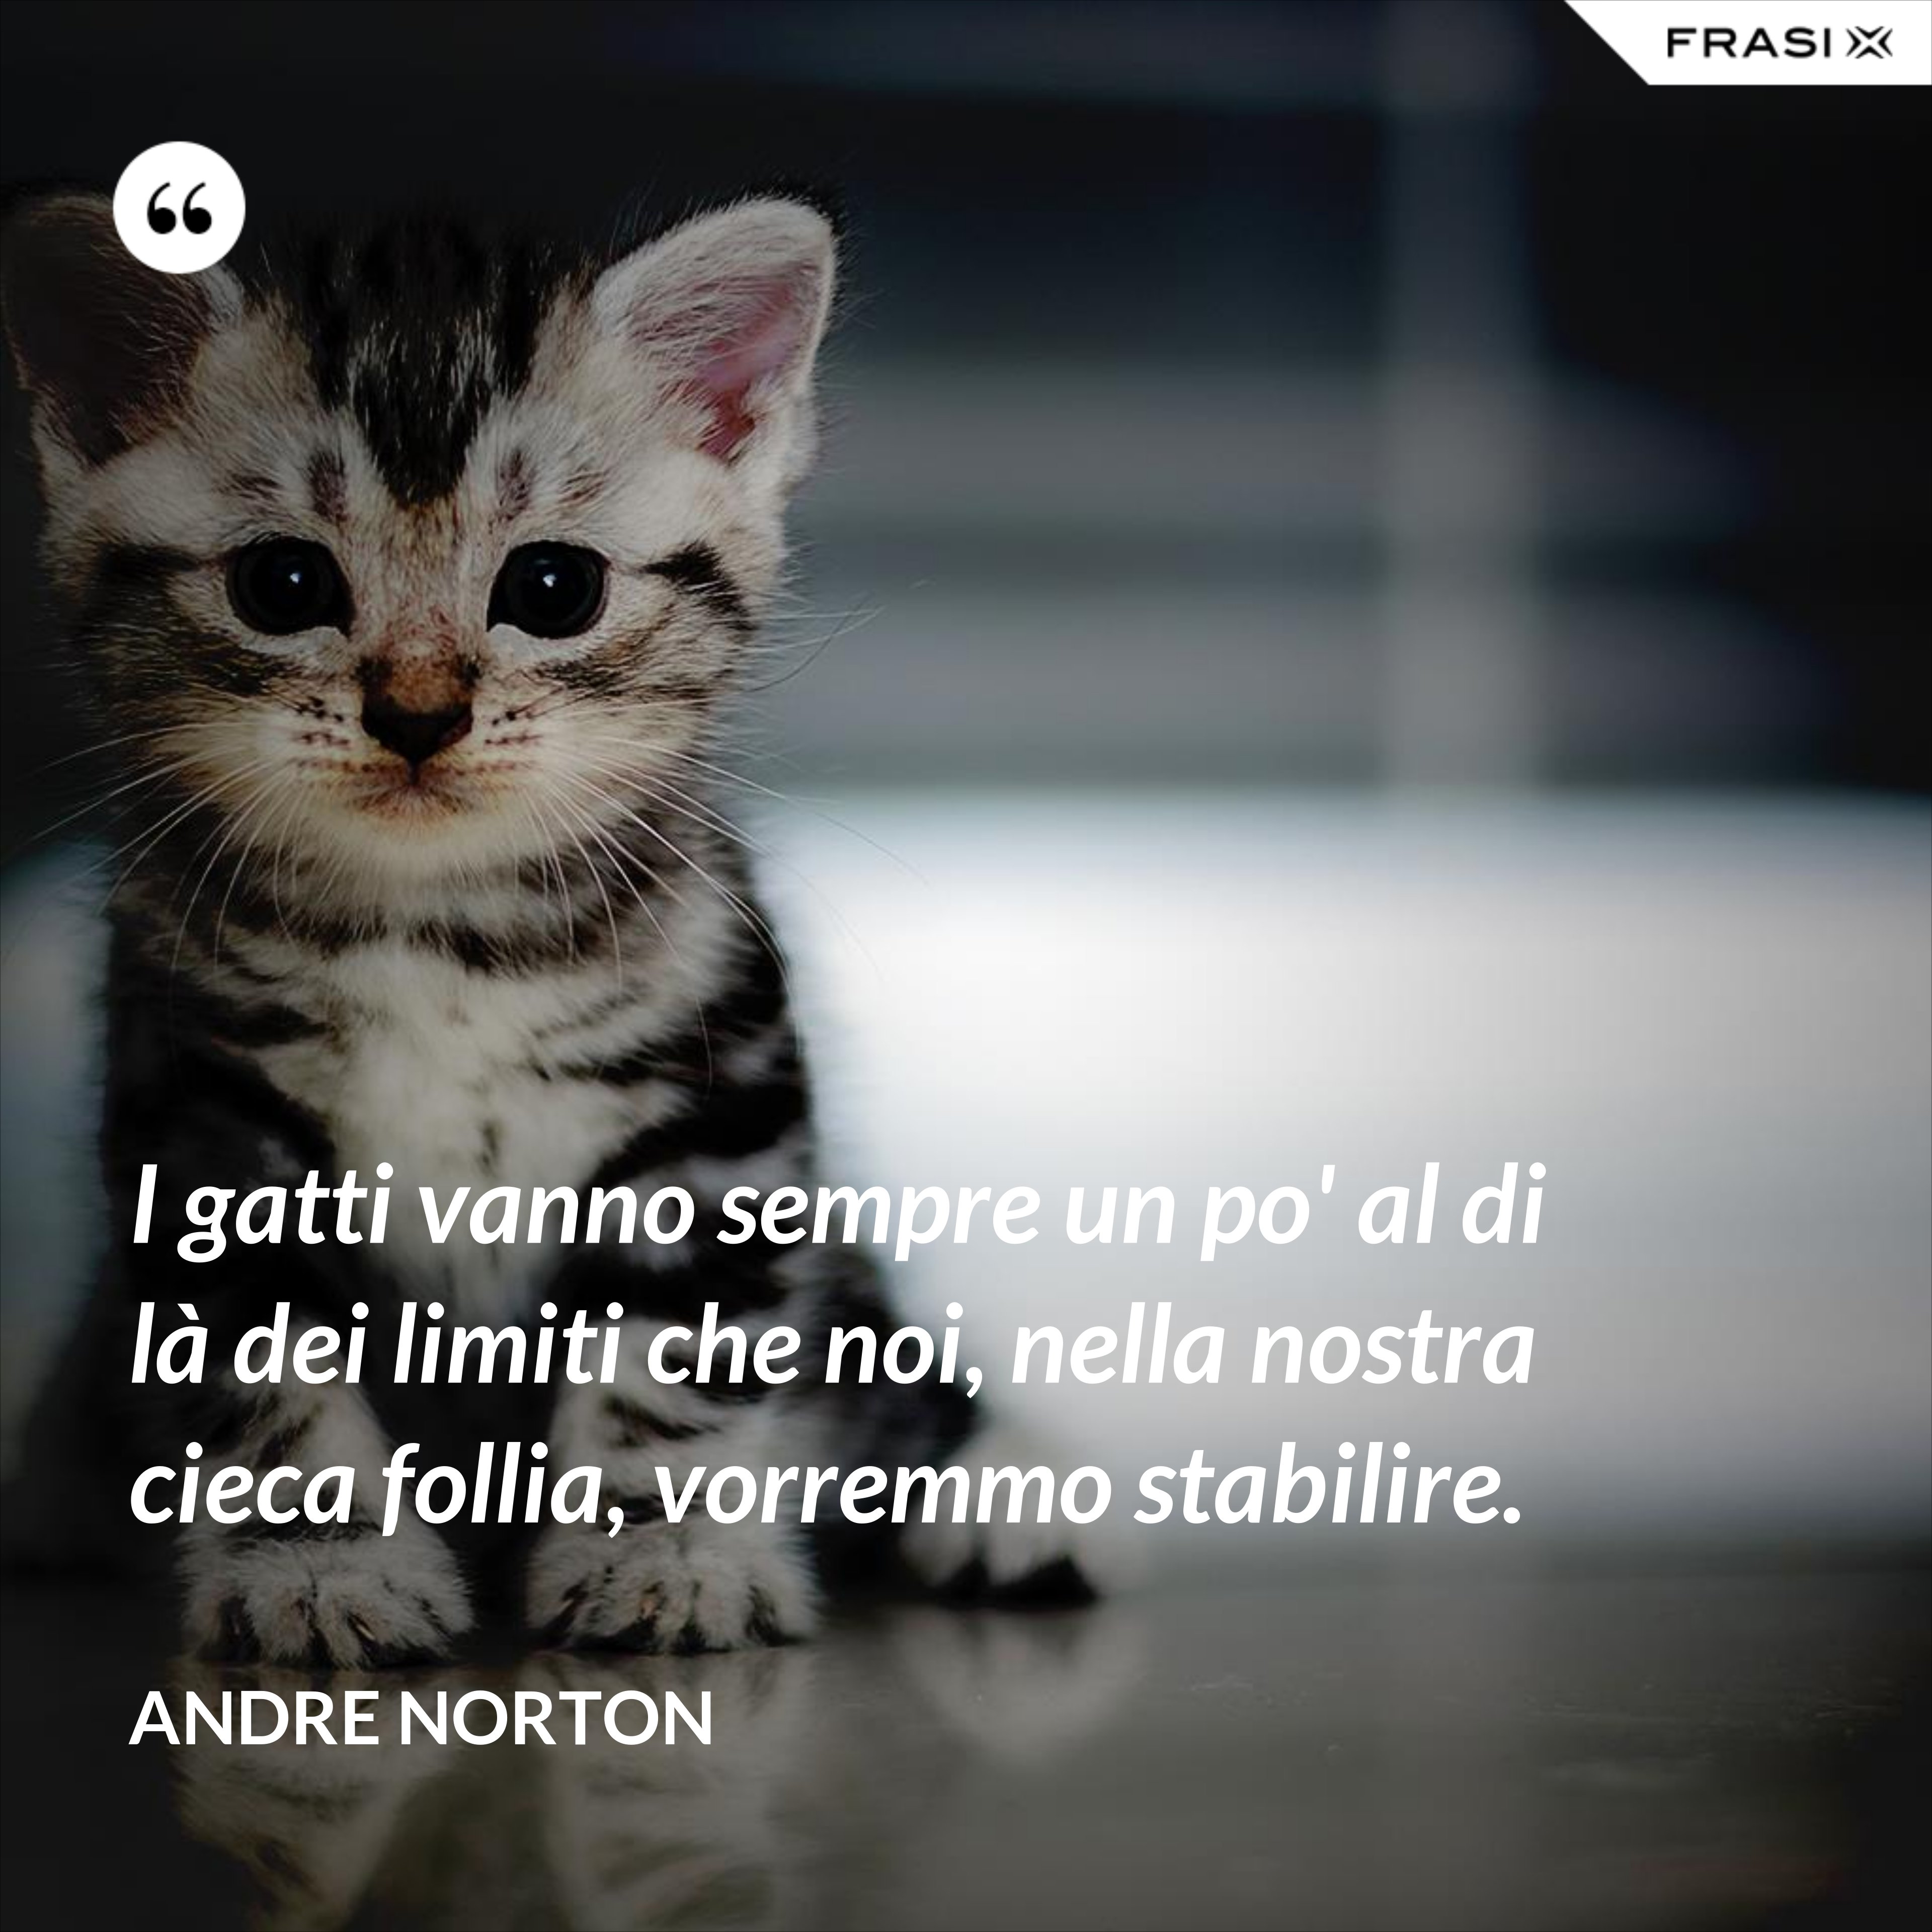 I gatti vanno sempre un po' al di là dei limiti che noi, nella nostra cieca follia, vorremmo stabilire. - Andre Norton